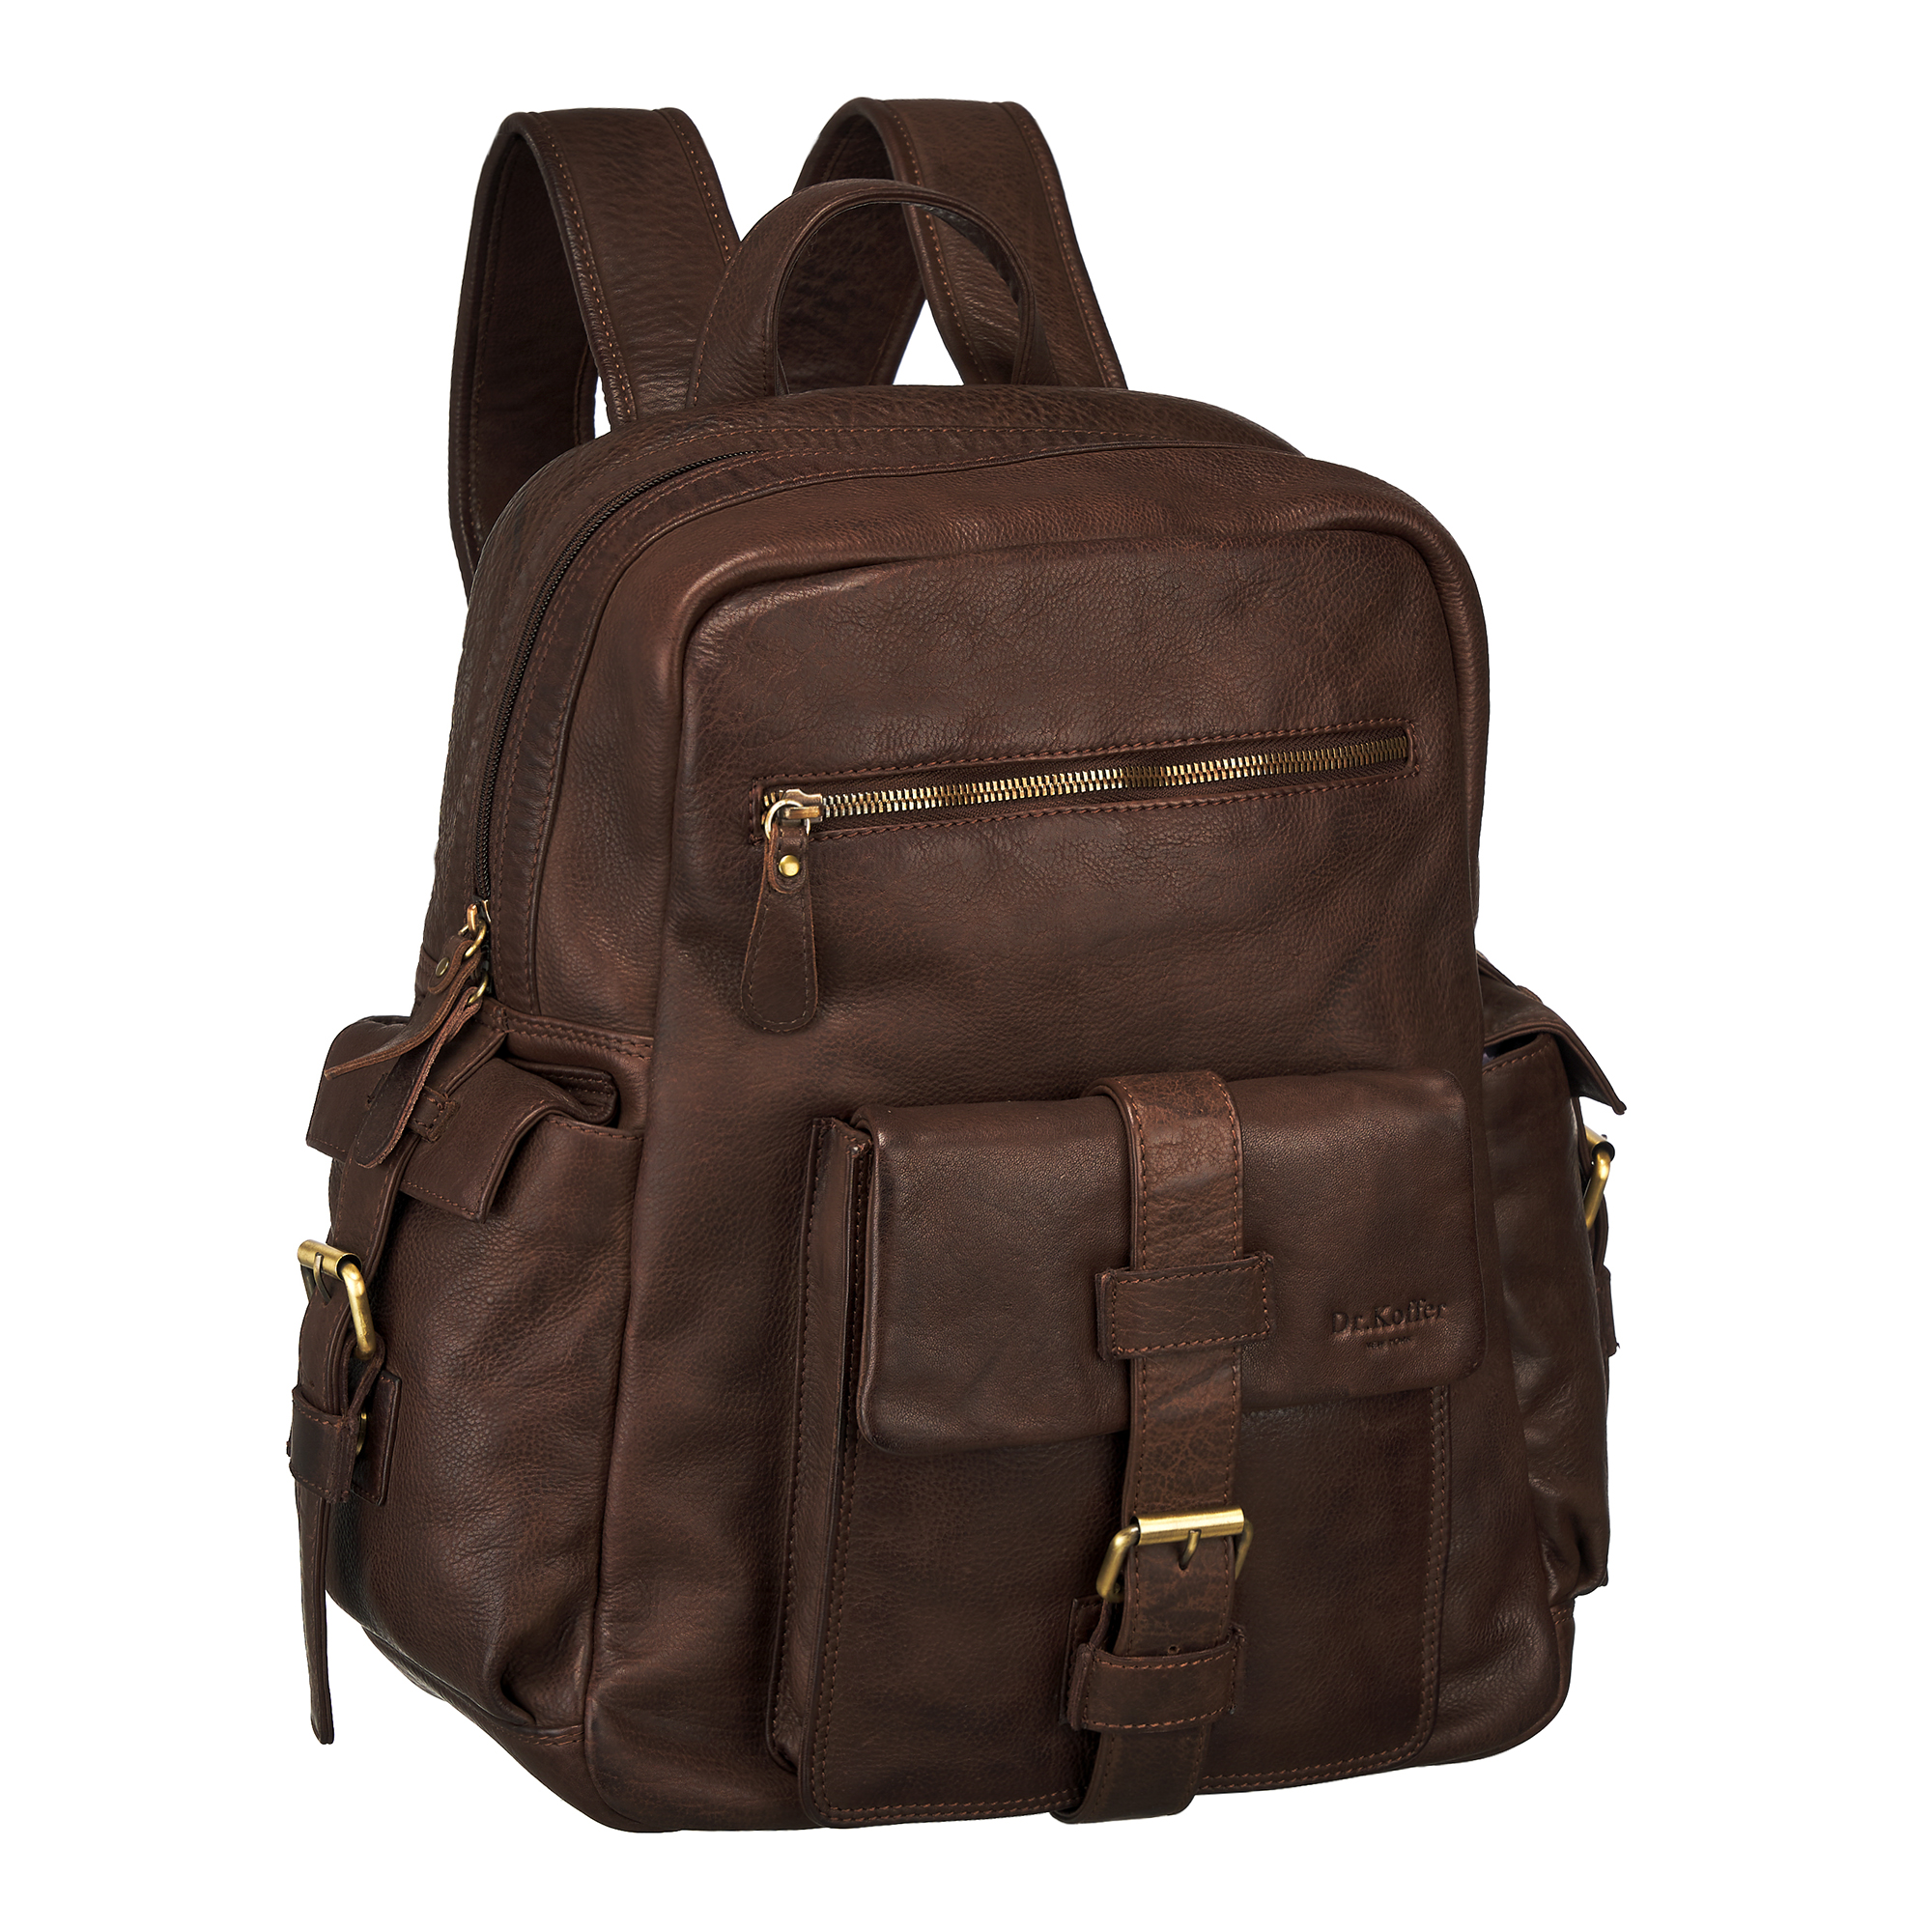 Др.Коффер M402719-248-09 рюкзак, цвет коричневый - фото 1